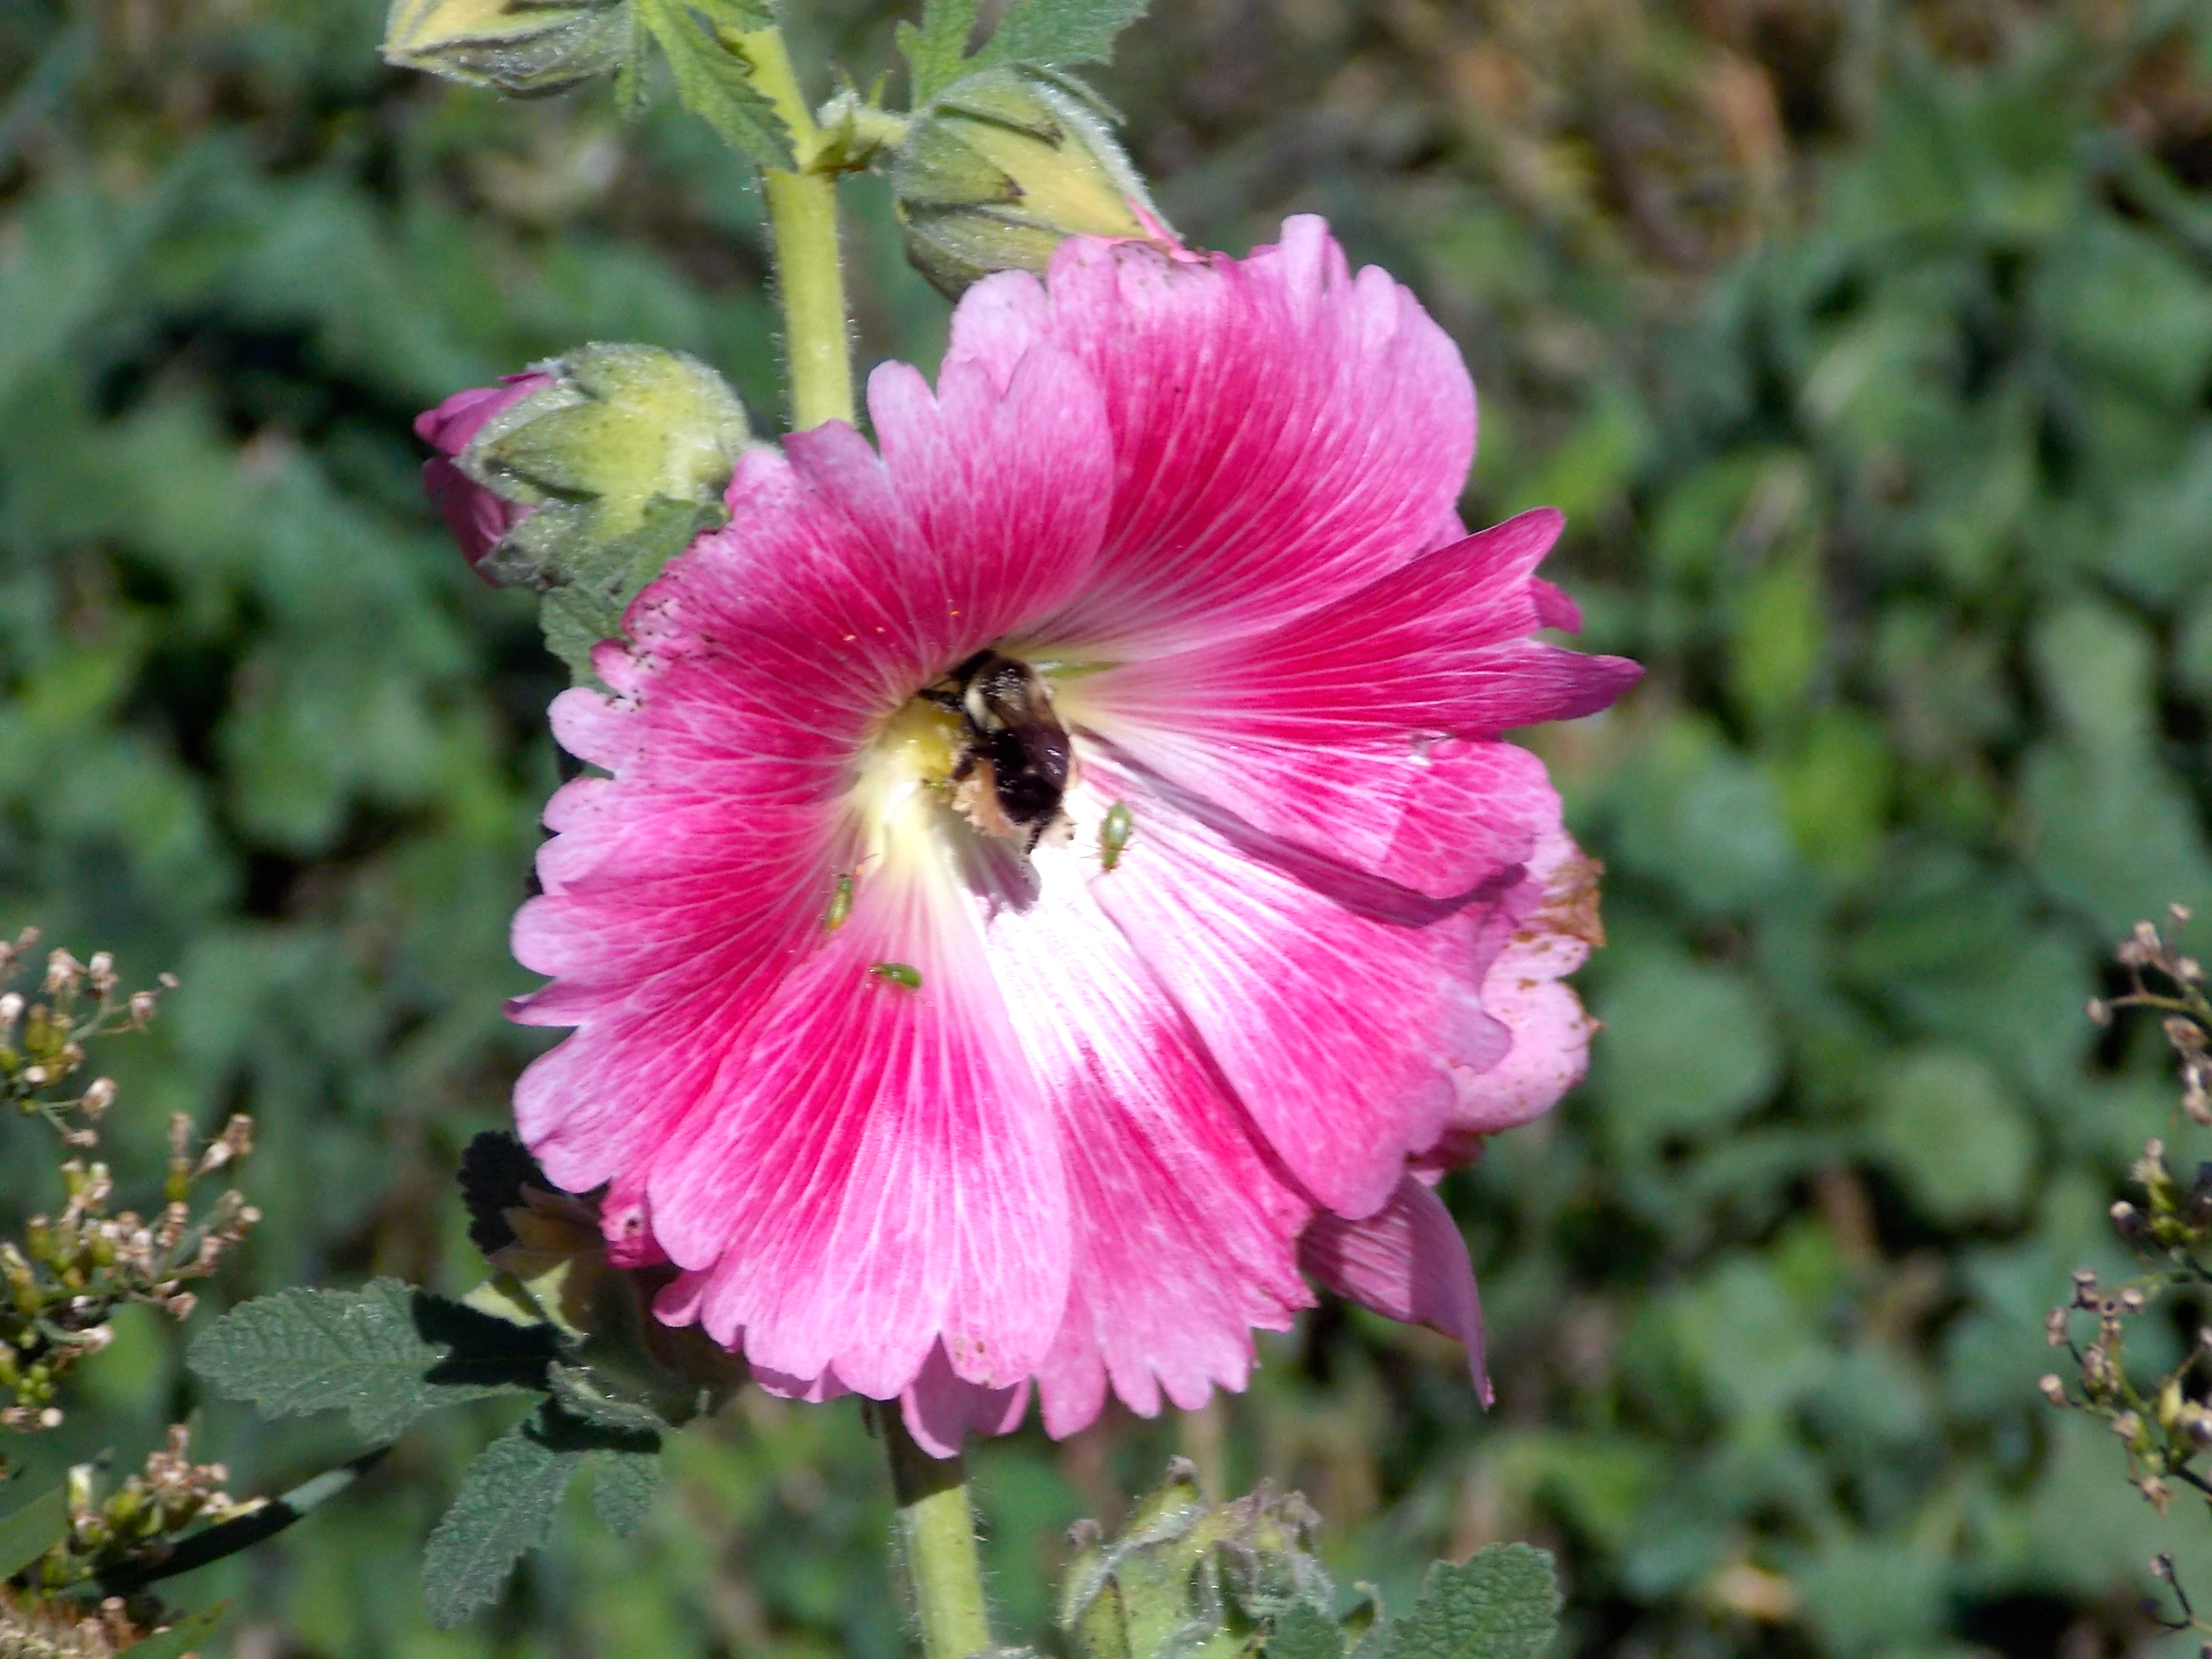 Pollinator Protection